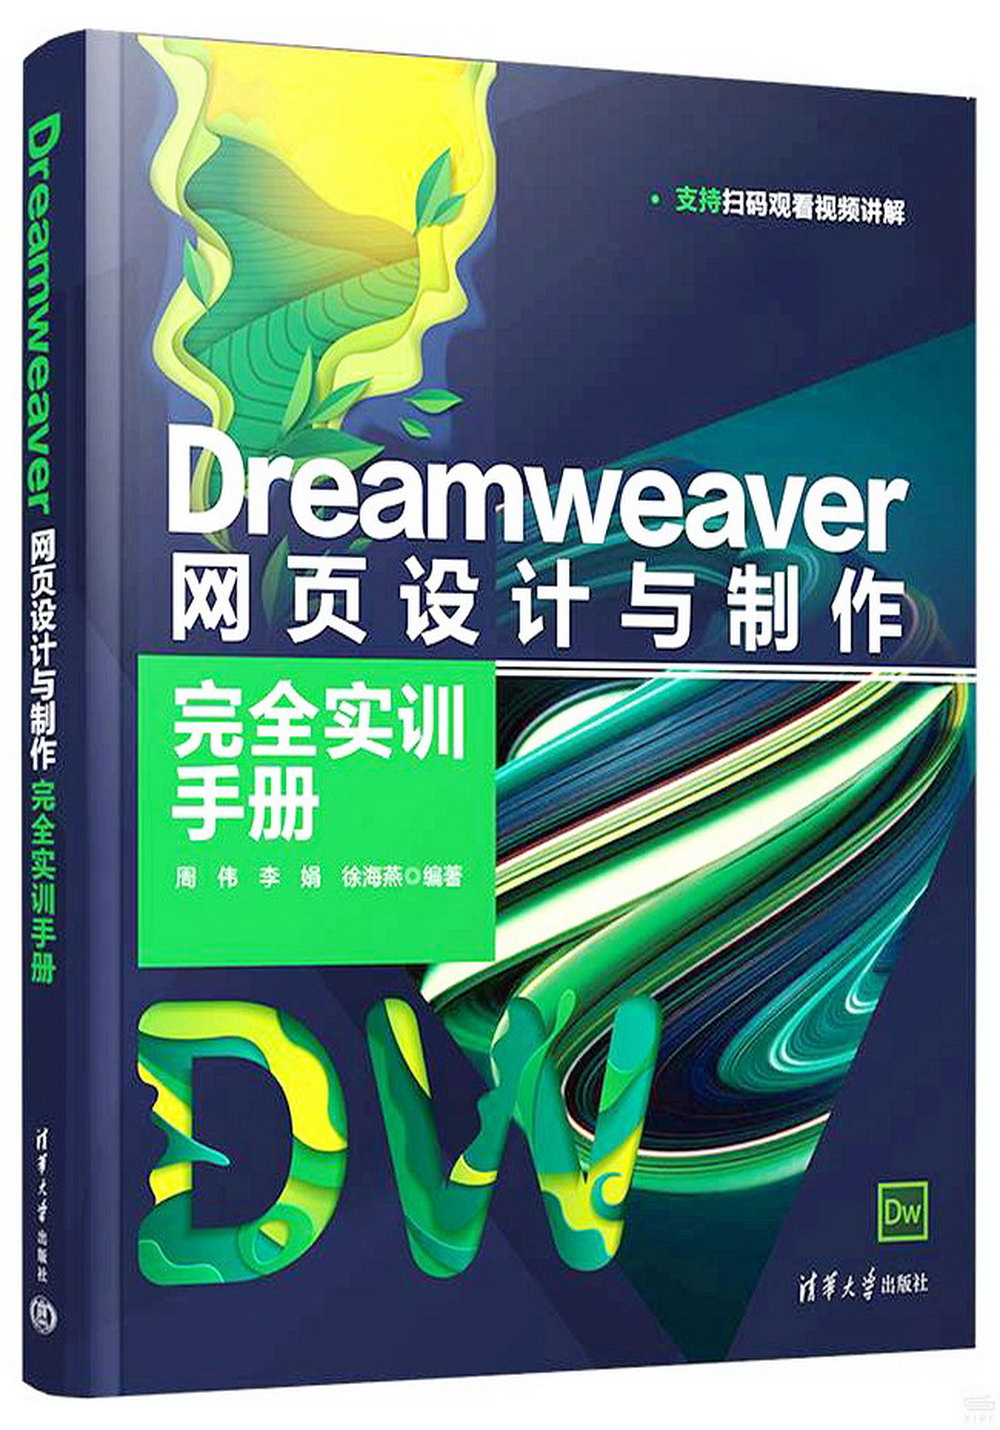 Dreamweaver網頁設計與製作完全實訓手冊